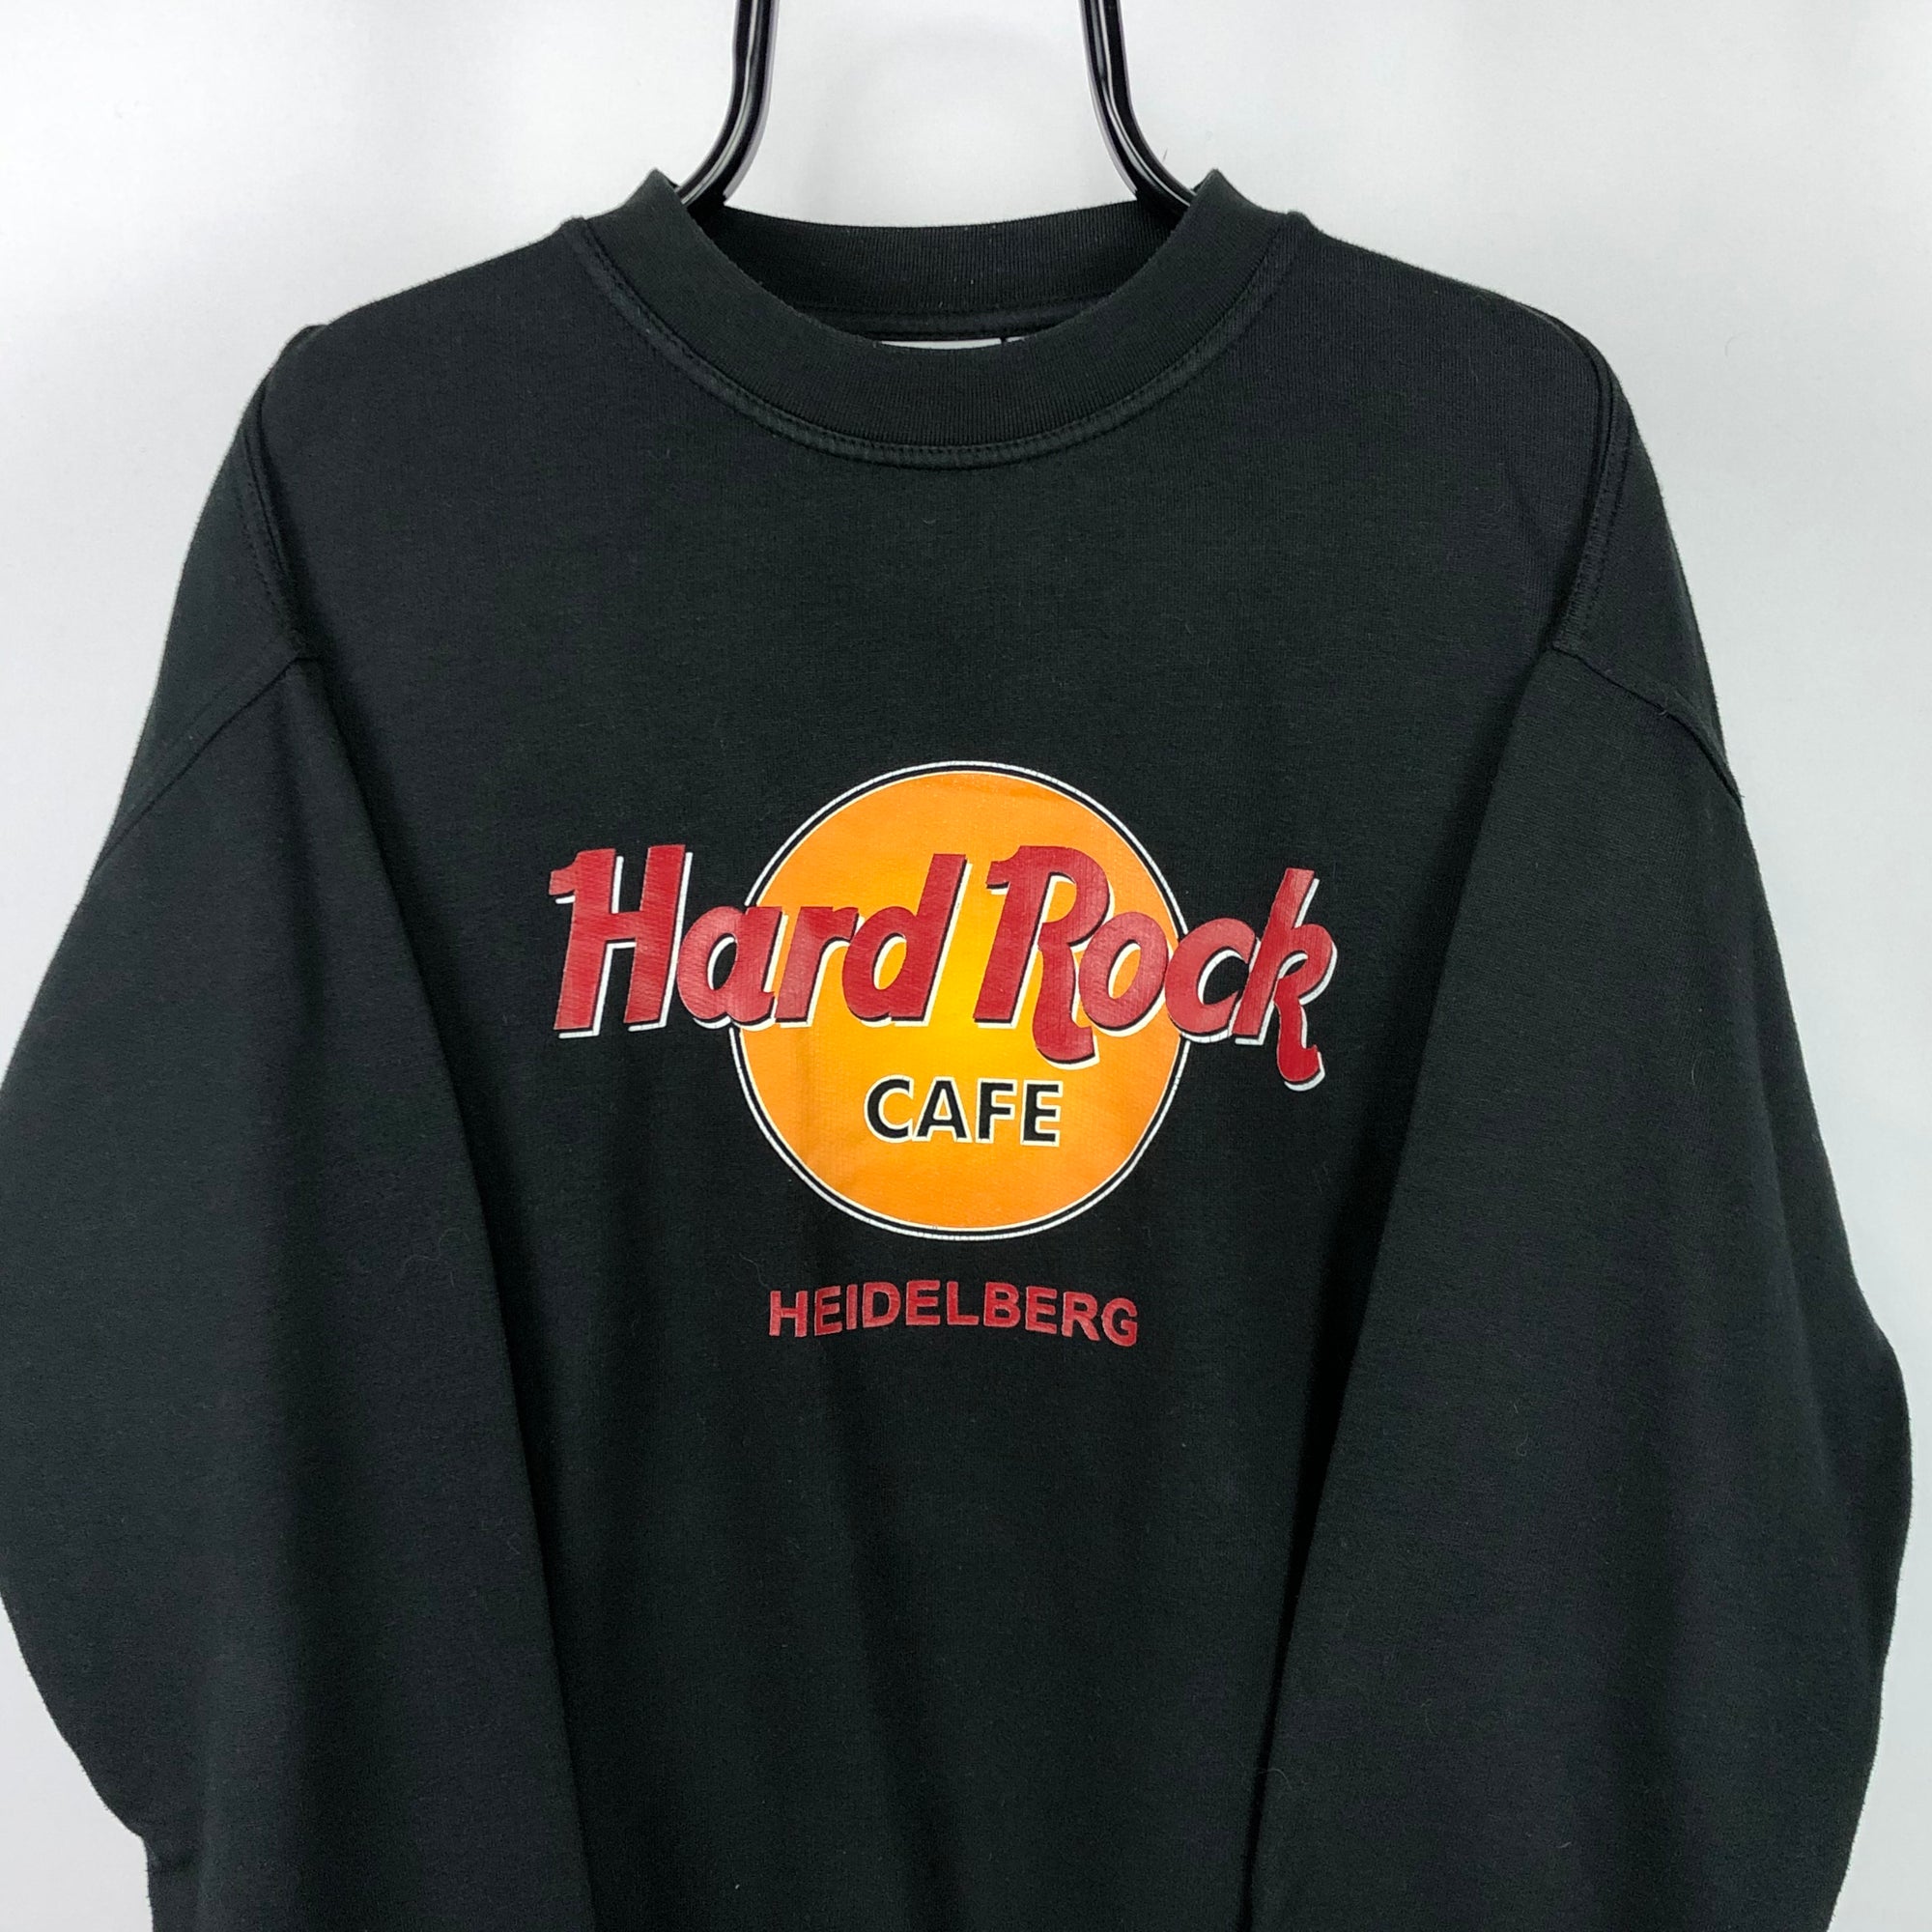 Vintage 90s Hard Rock Cafe Sweatshirt in Black - Men's XL/Women's XXL